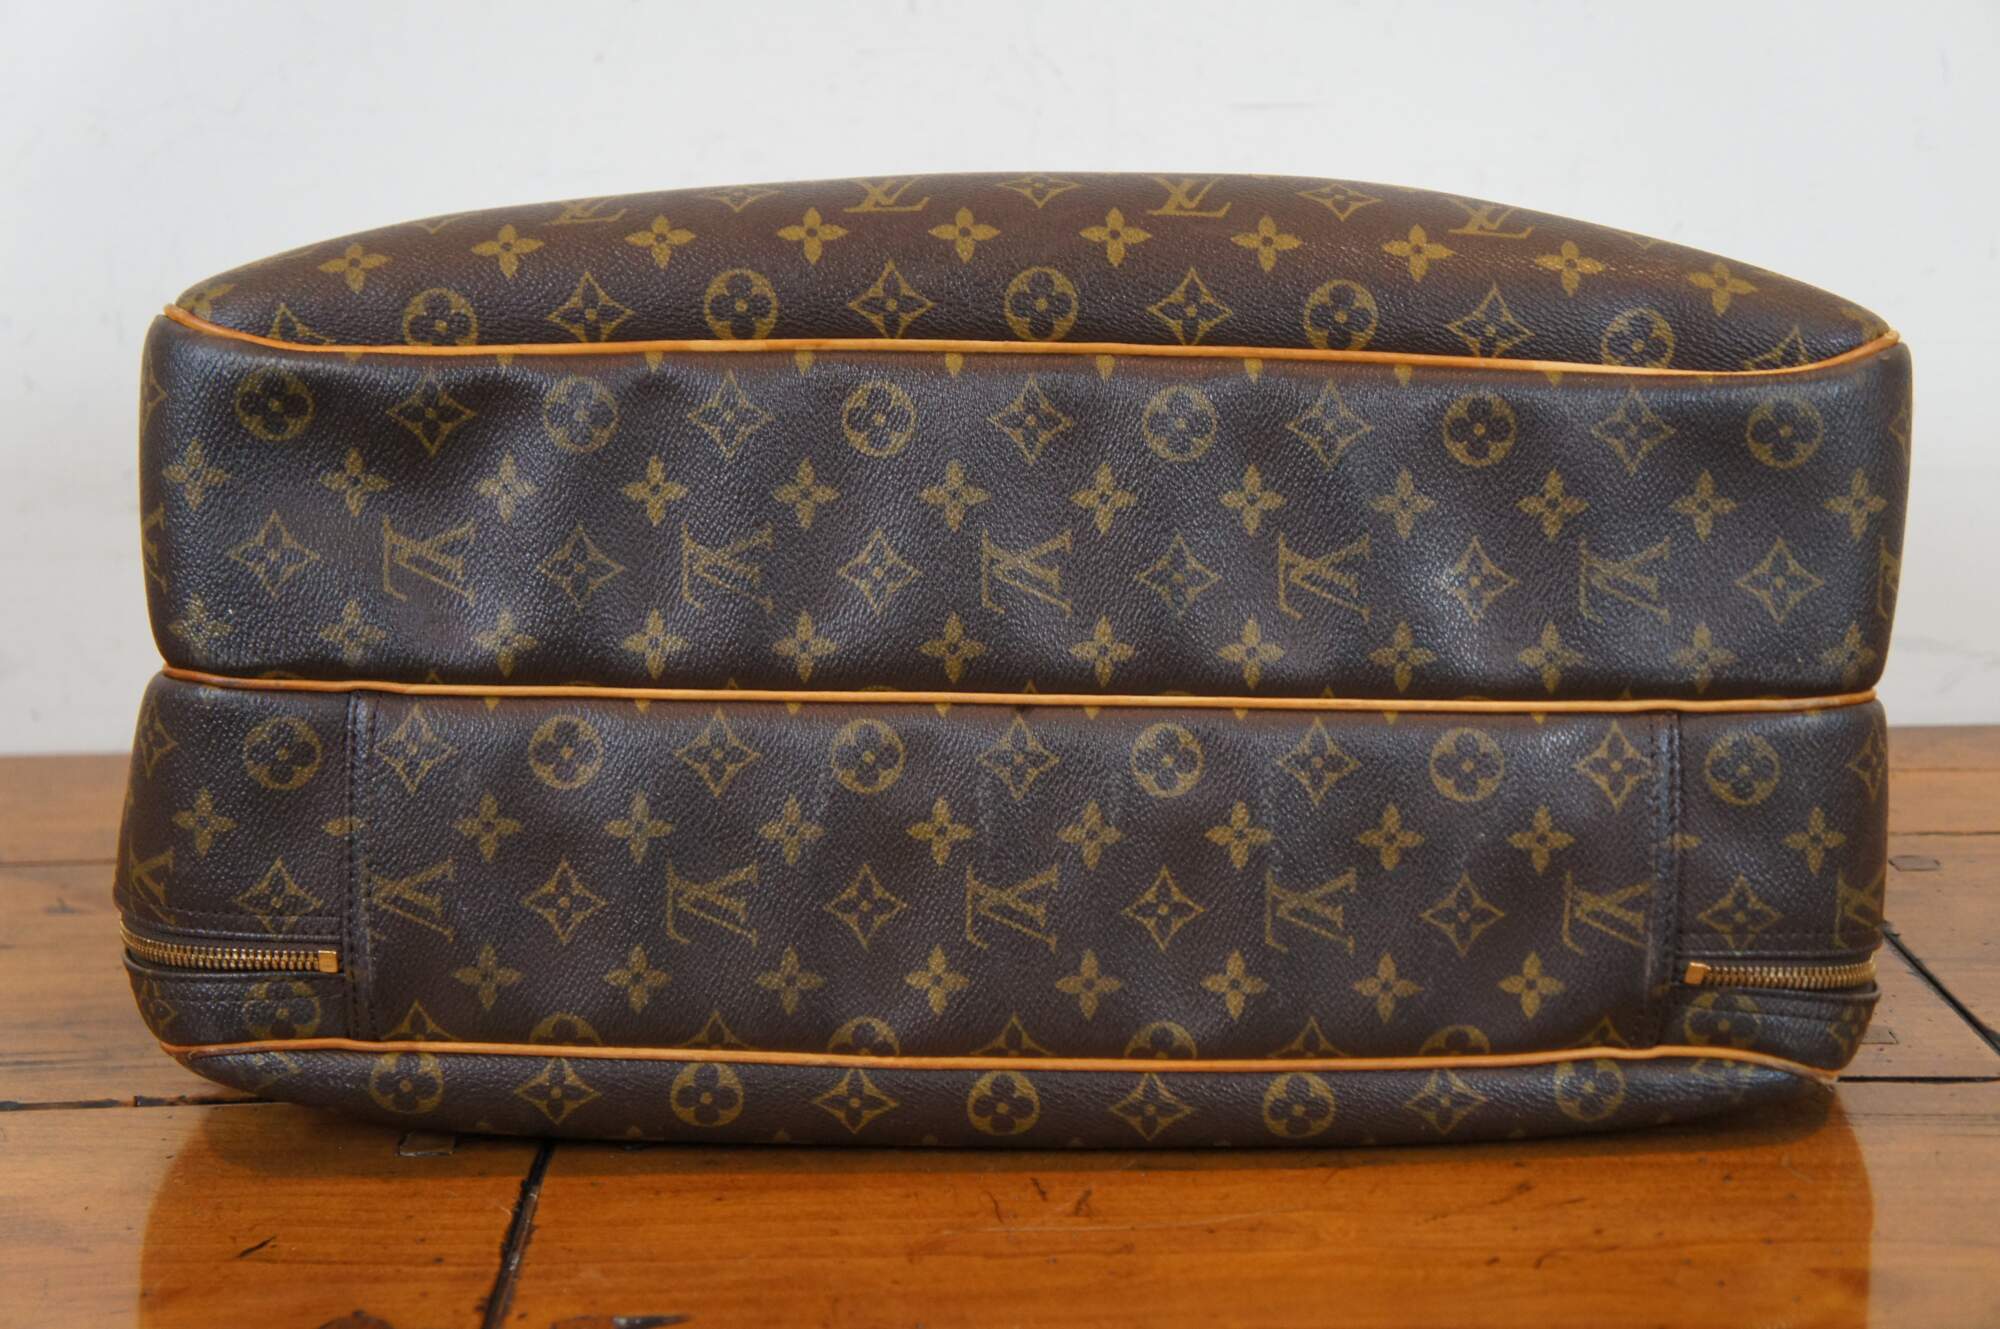 Louis Vuitton Alize Travel bag 358756